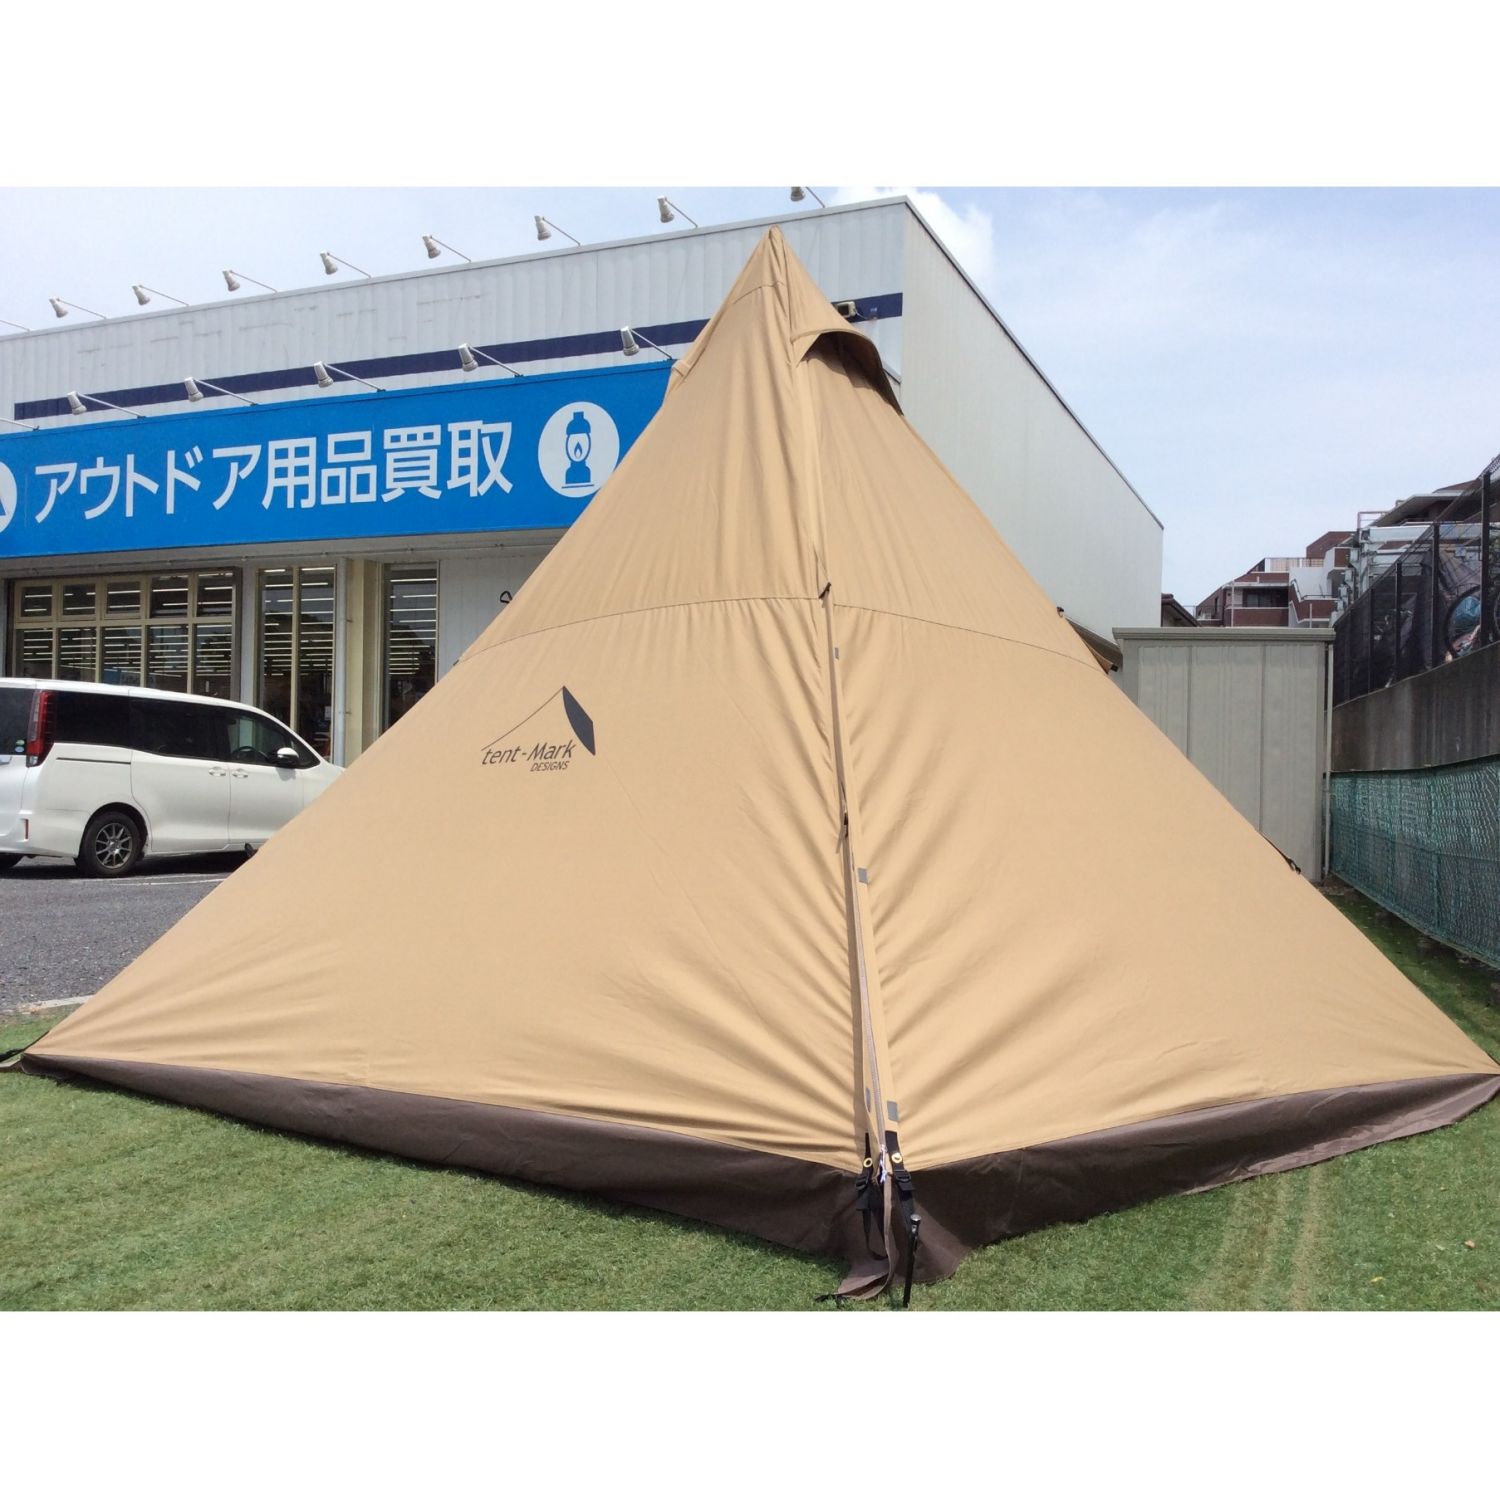 新品 テンマクデザイン tent-mark designs サーカスTC サンド